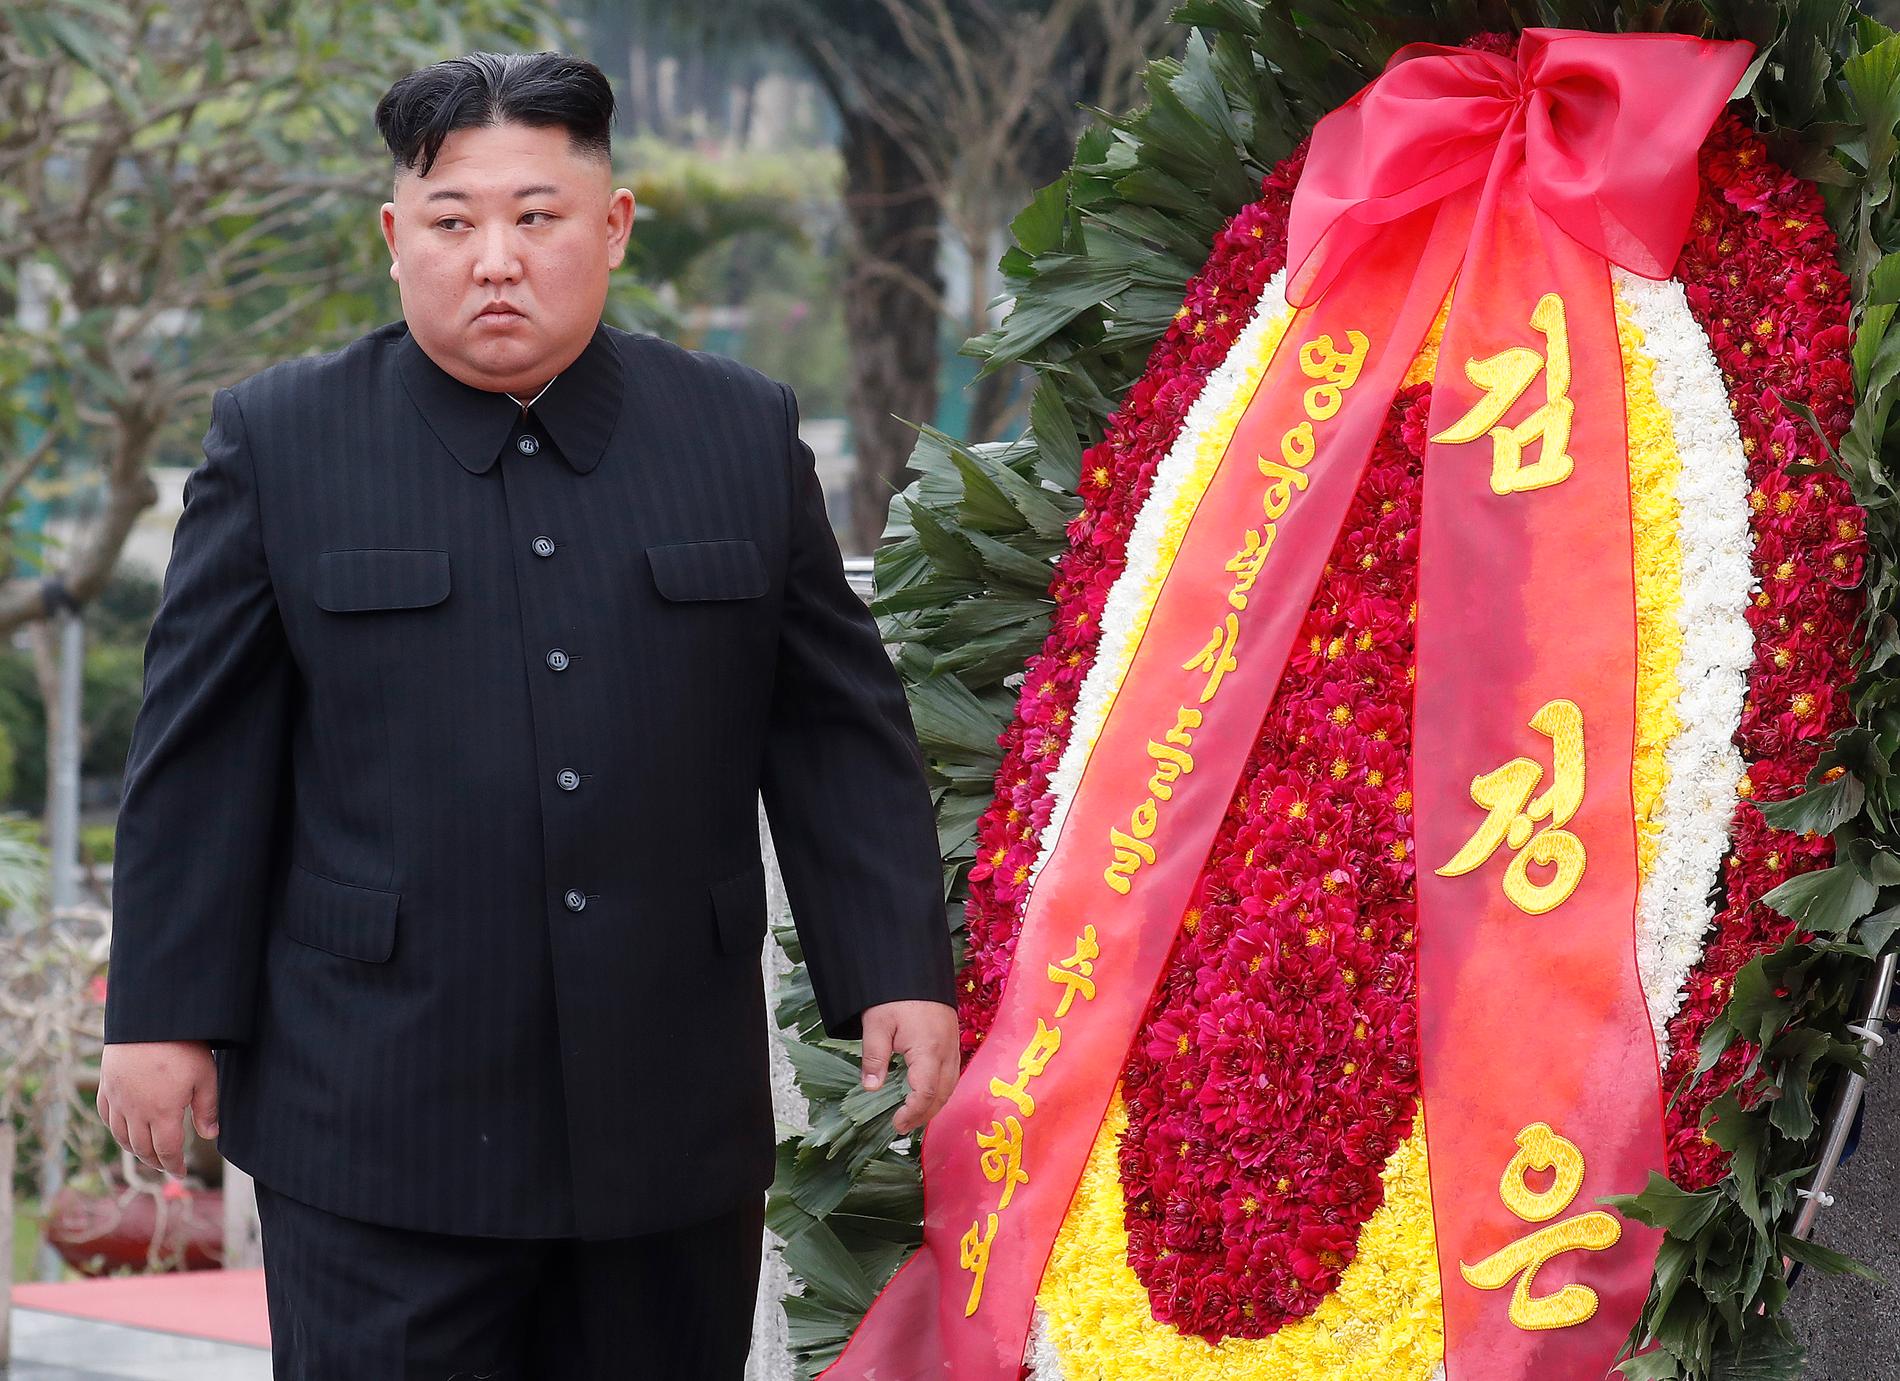 Nordkoreas ledare Kim Jong-Un lade en krans vid minnesplatsen för de stupade i Vietnamkriget samt utanför Ho Chi Minhs mausoleum under sin sista dag i Hanoi efter mötet med USA:s president Donald Trump.